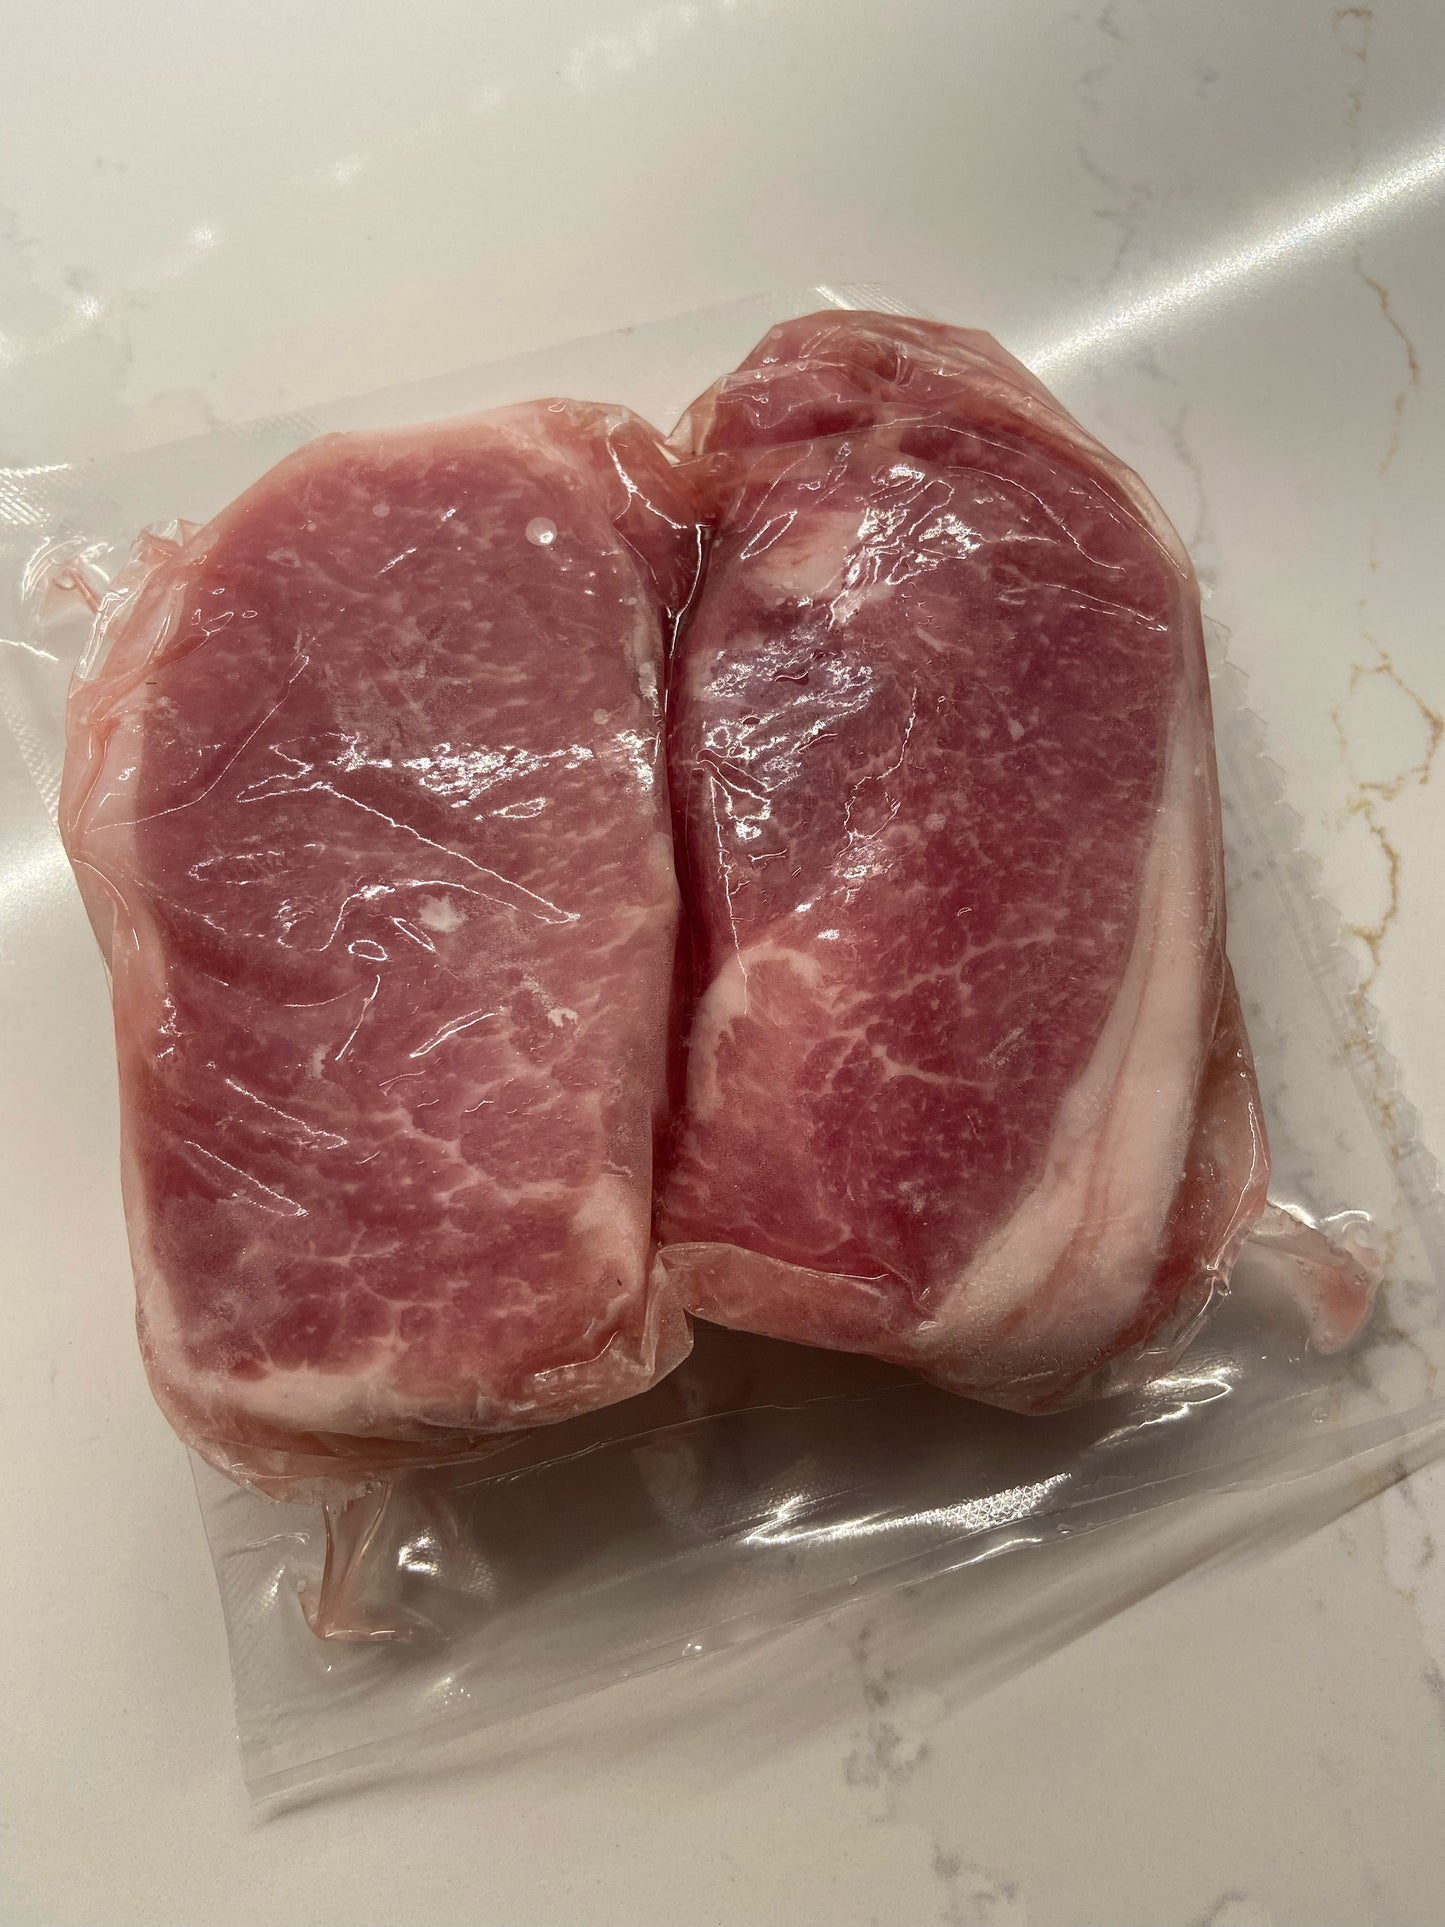 Boneless Pork Chops